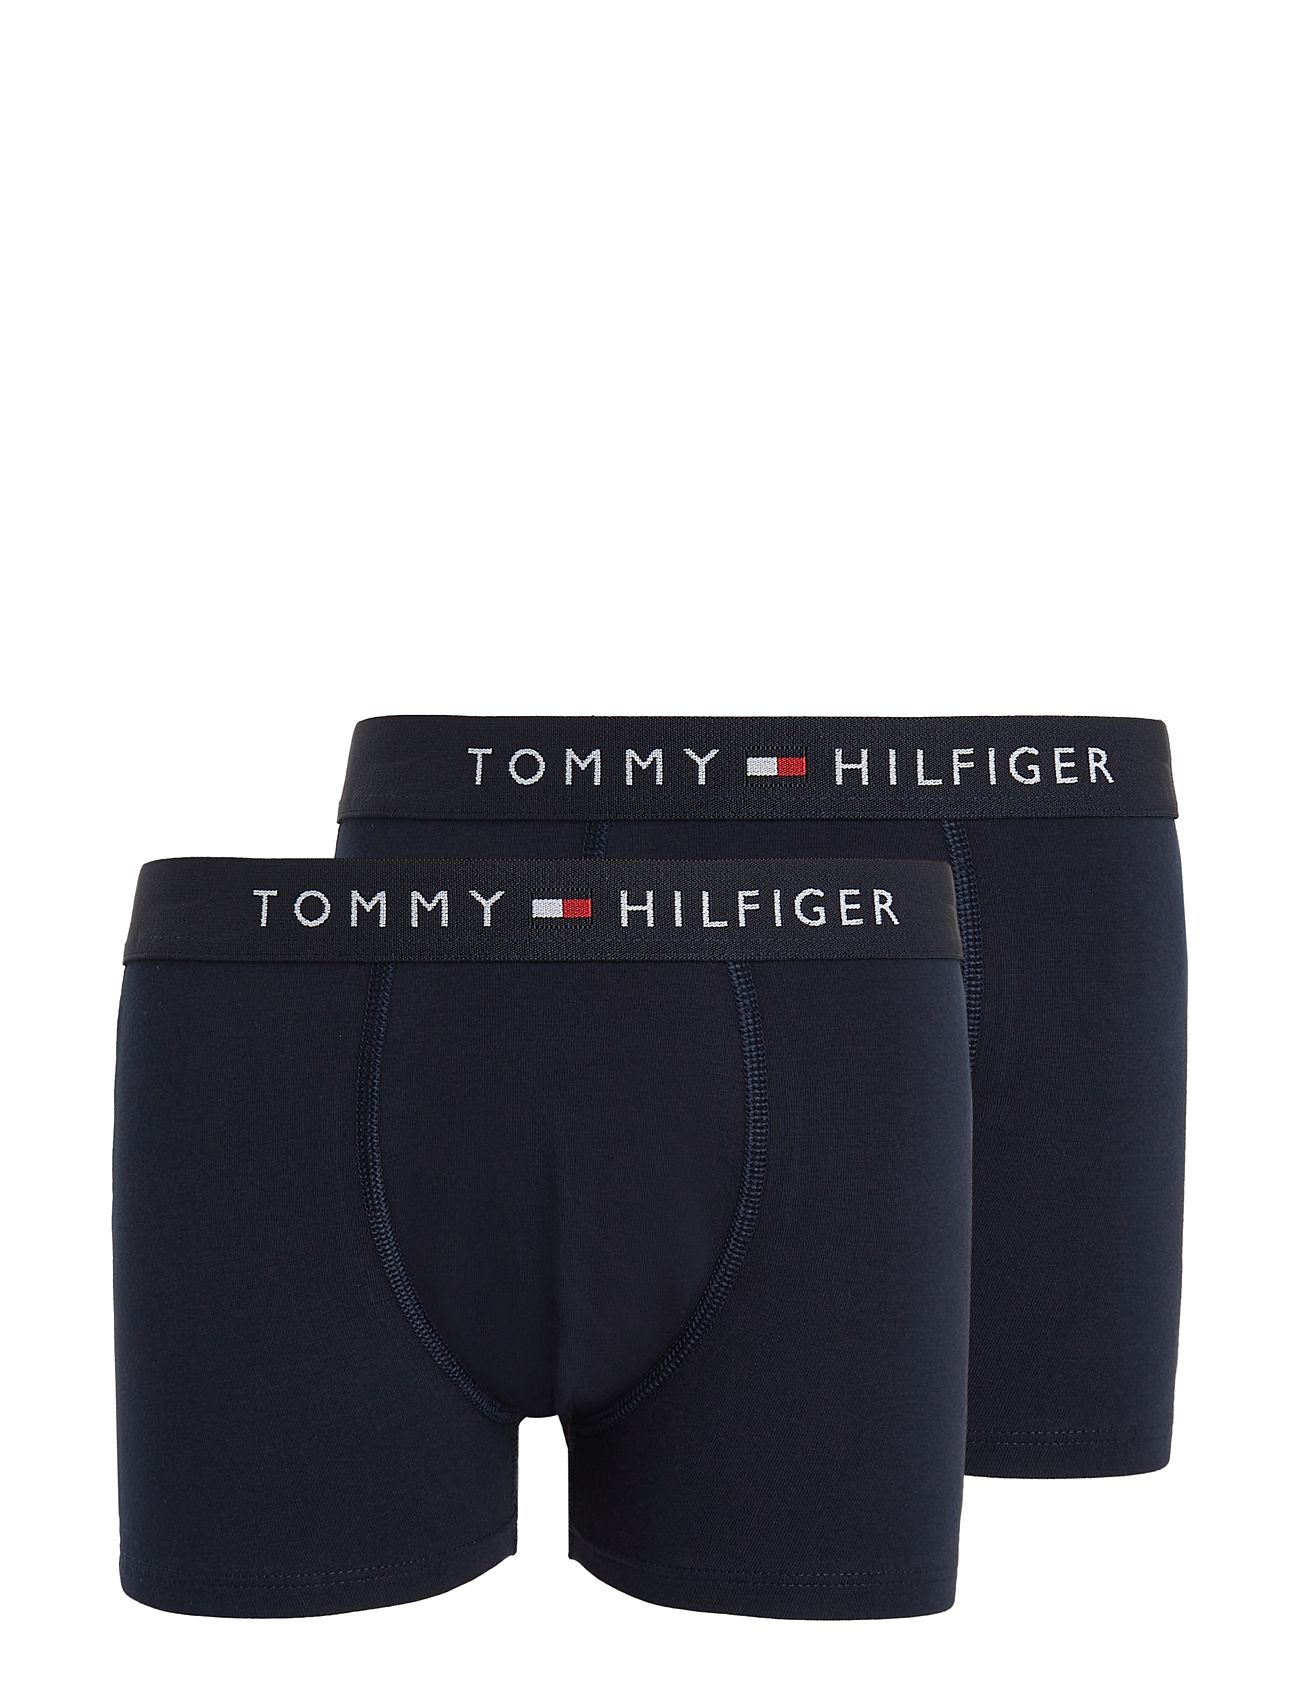 Tommy Hilfiger 2p Trunk Undertøj - Boozt.com